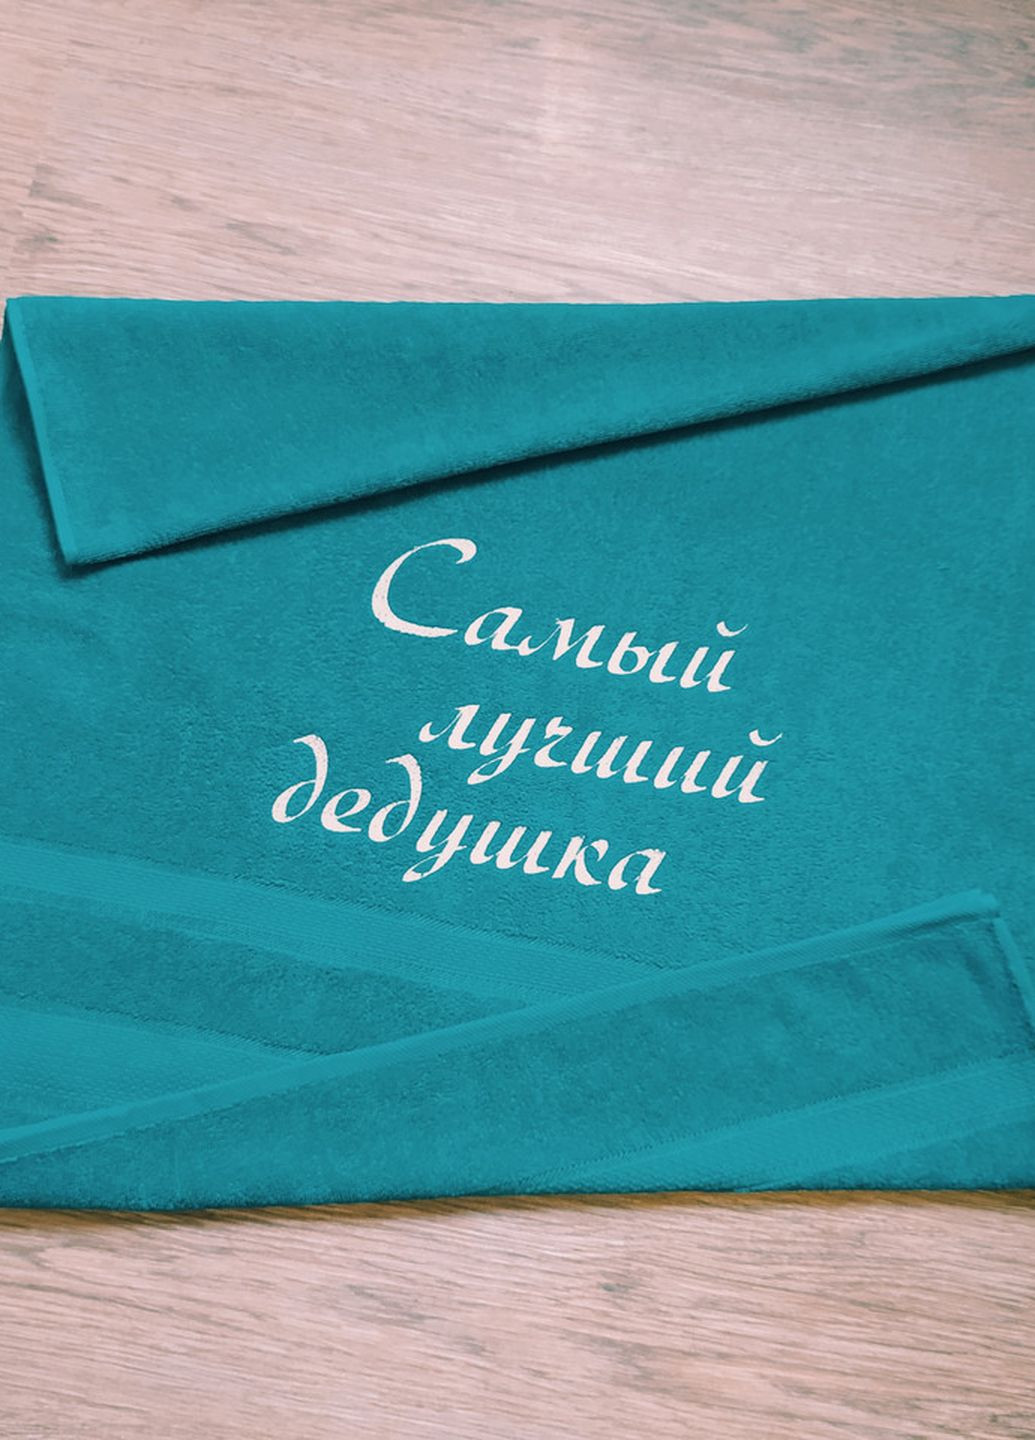 No Brand полотенце с вышивкой махровое банное 70*140 бирюзовый дедушке 00103 однотонный бирюзовый производство - Украина